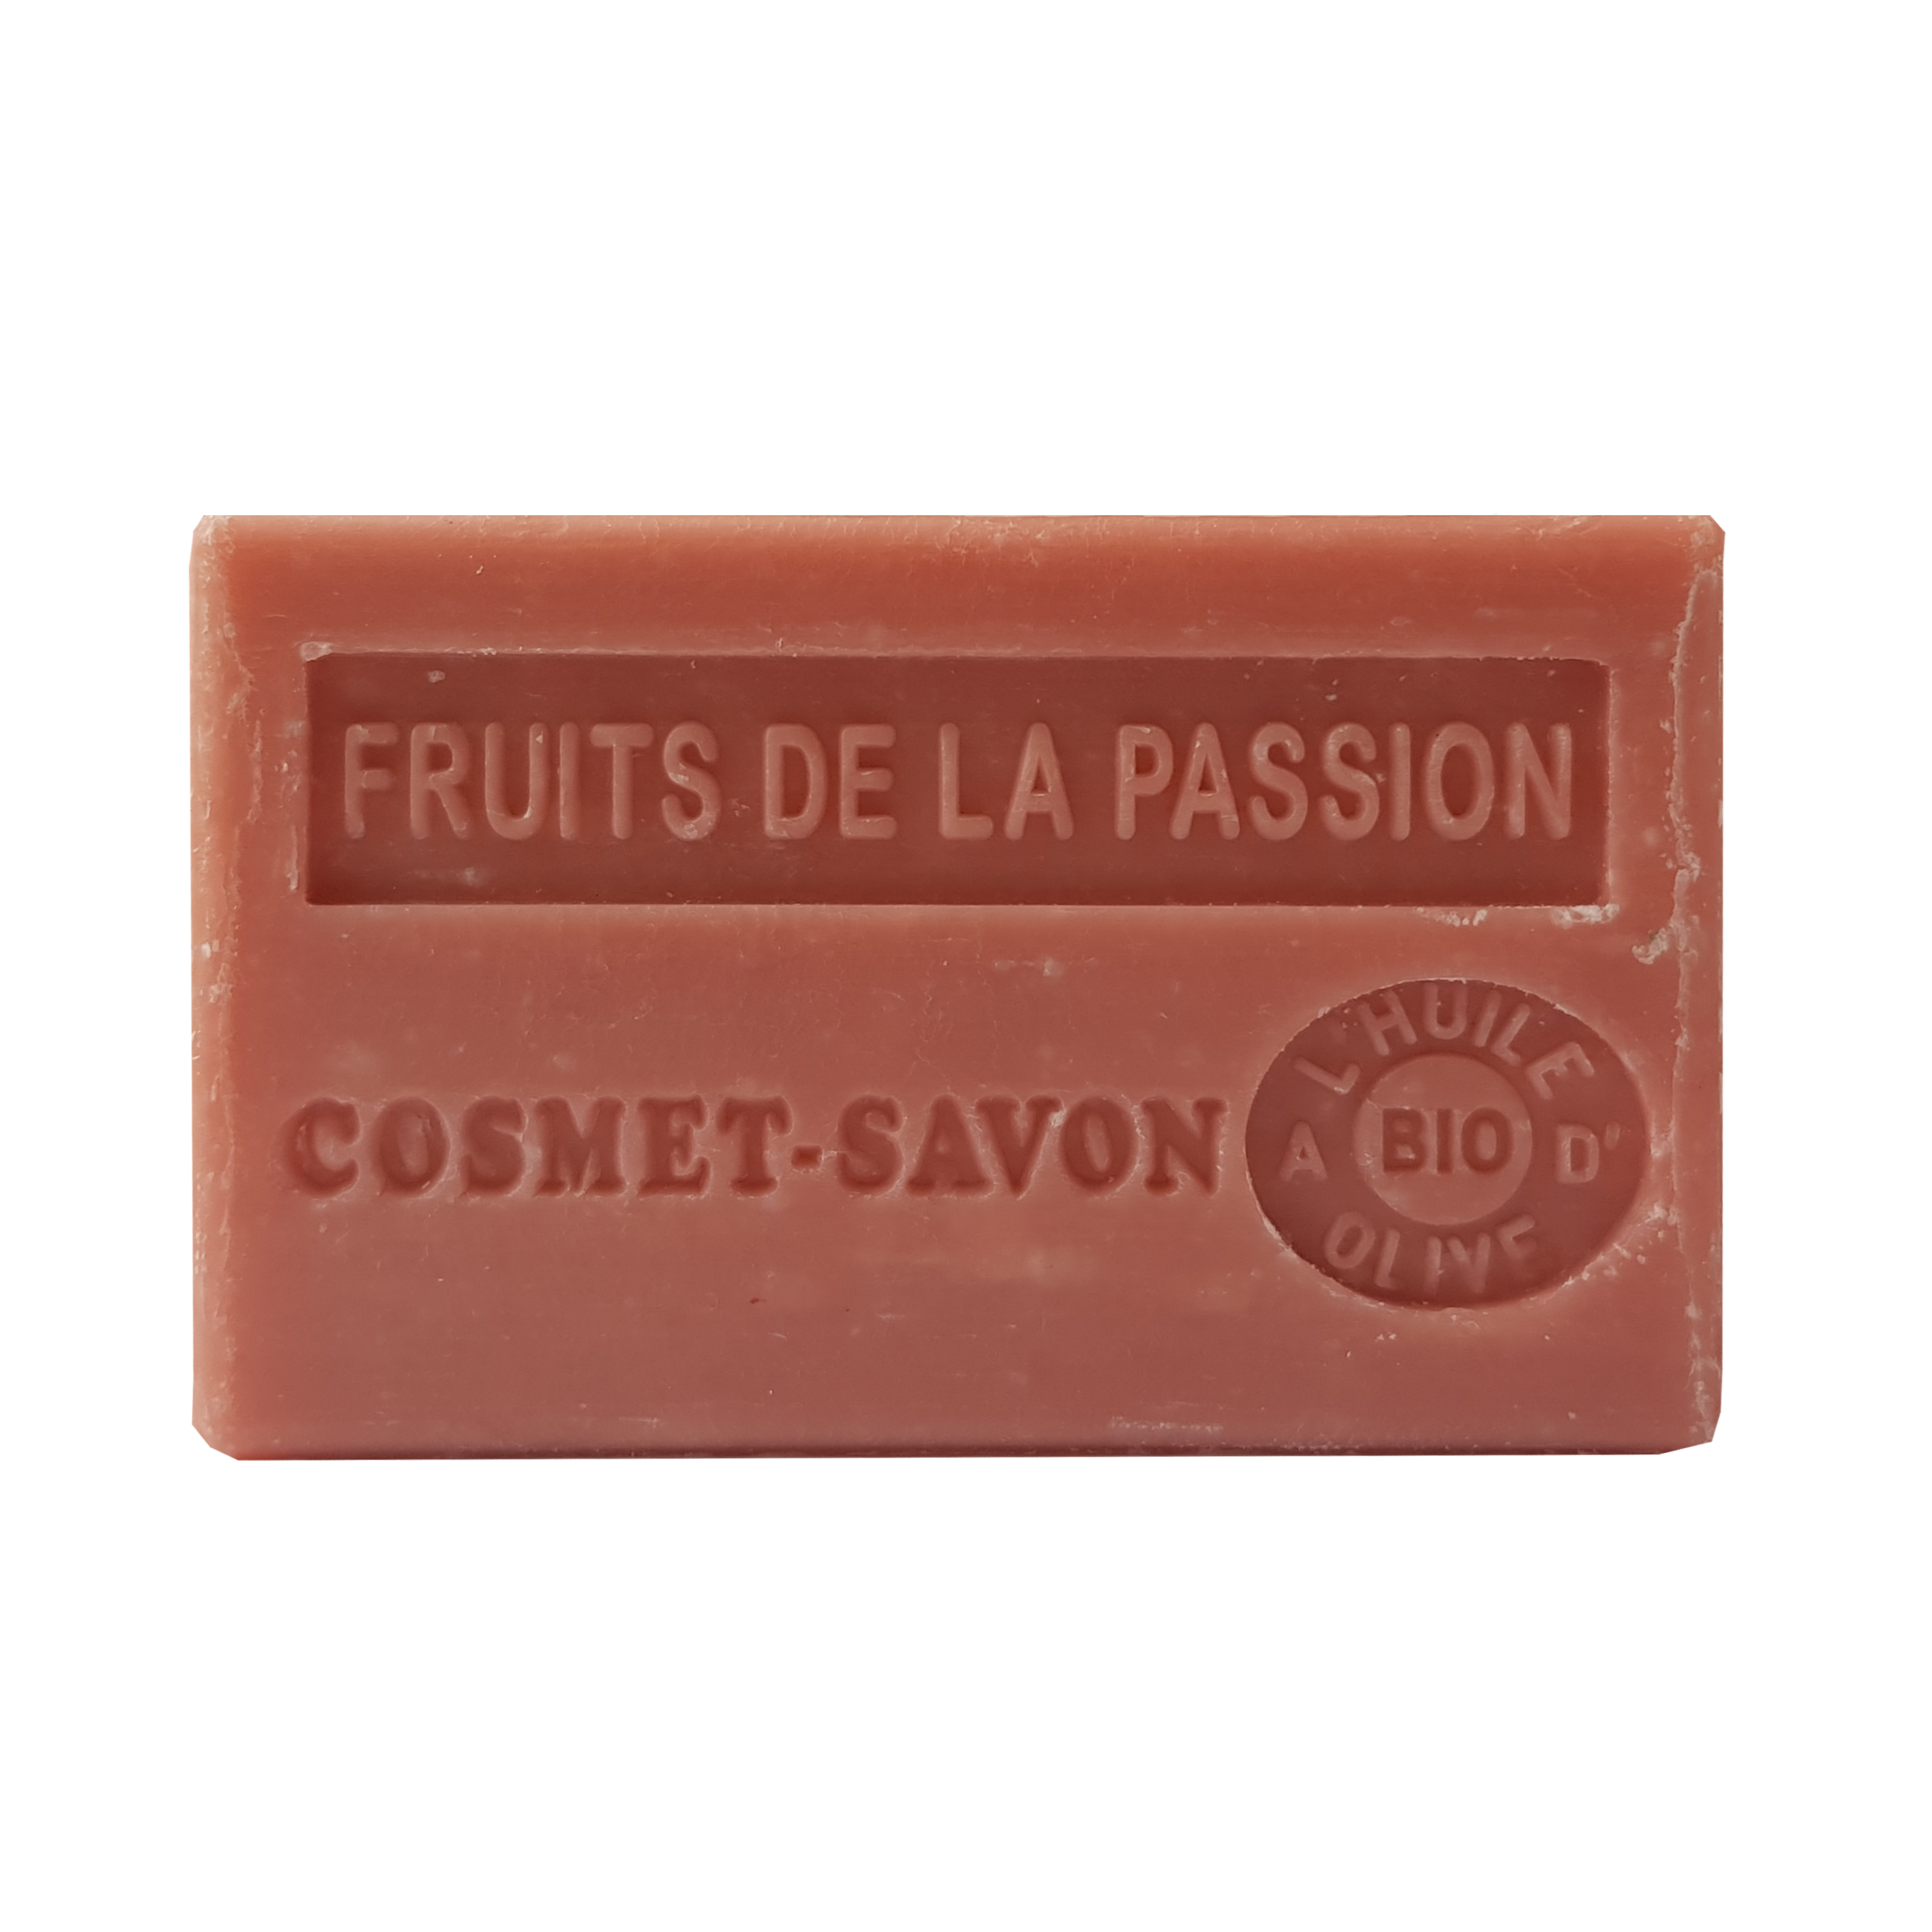 fruits-de-la-passion-savon-125gr-au-beurre-de-karite-bio-cosmet-savon-3665205006355-face-JPEG